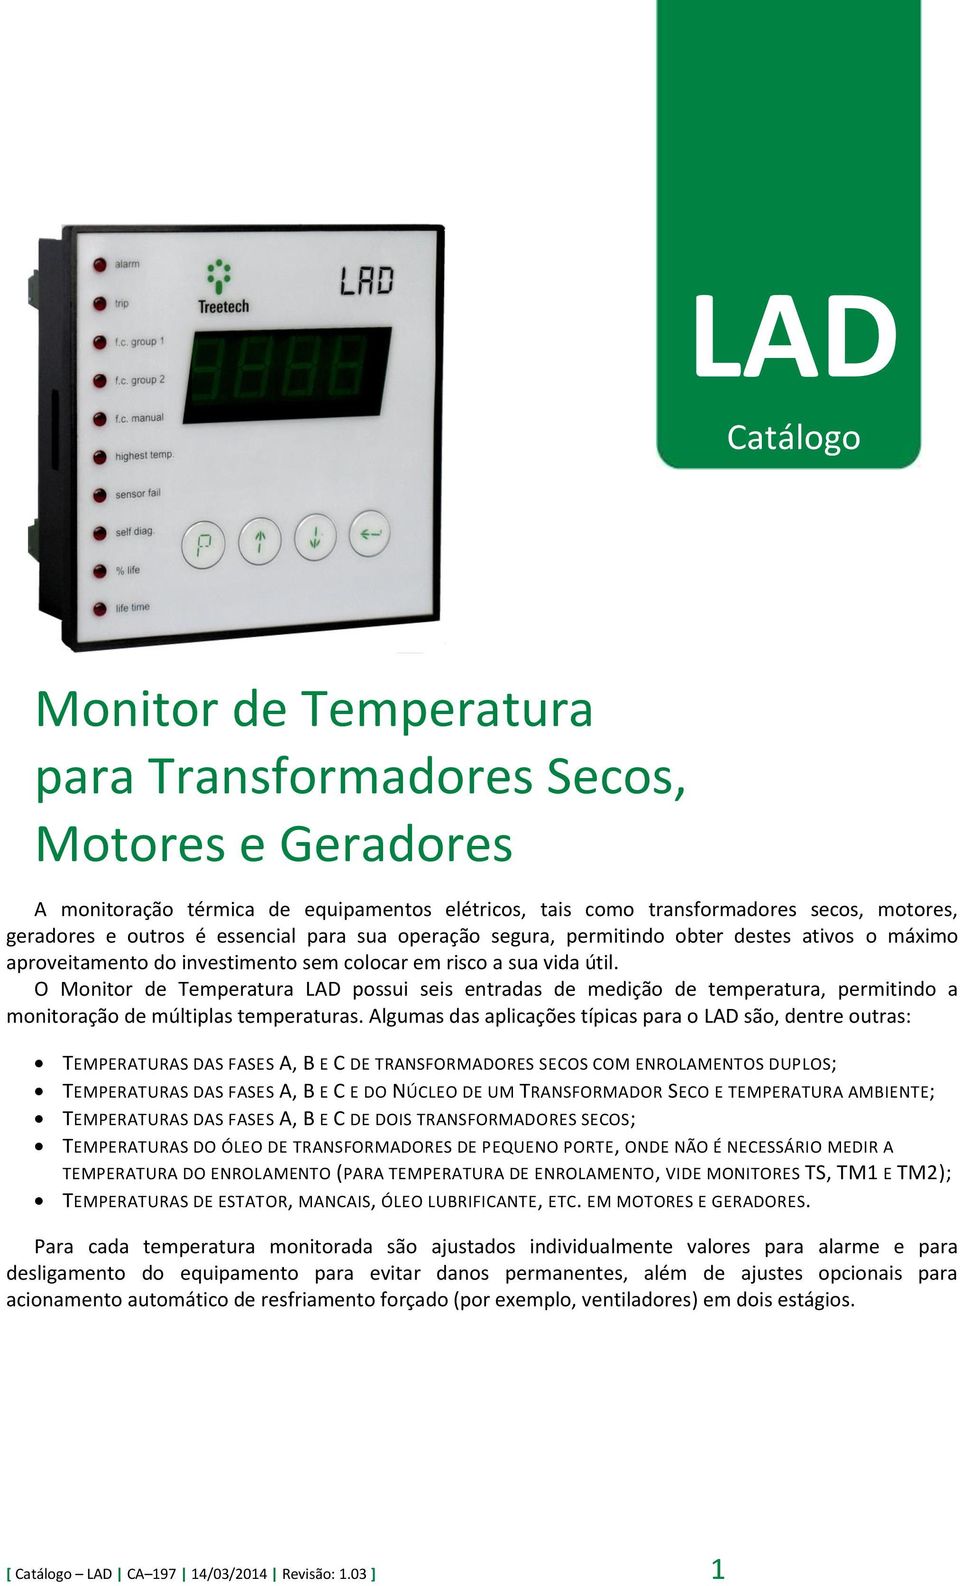 O Monitor de Temperatura LAD possui seis entradas de medição de temperatura, permitindo a monitoração de múltiplas temperaturas.